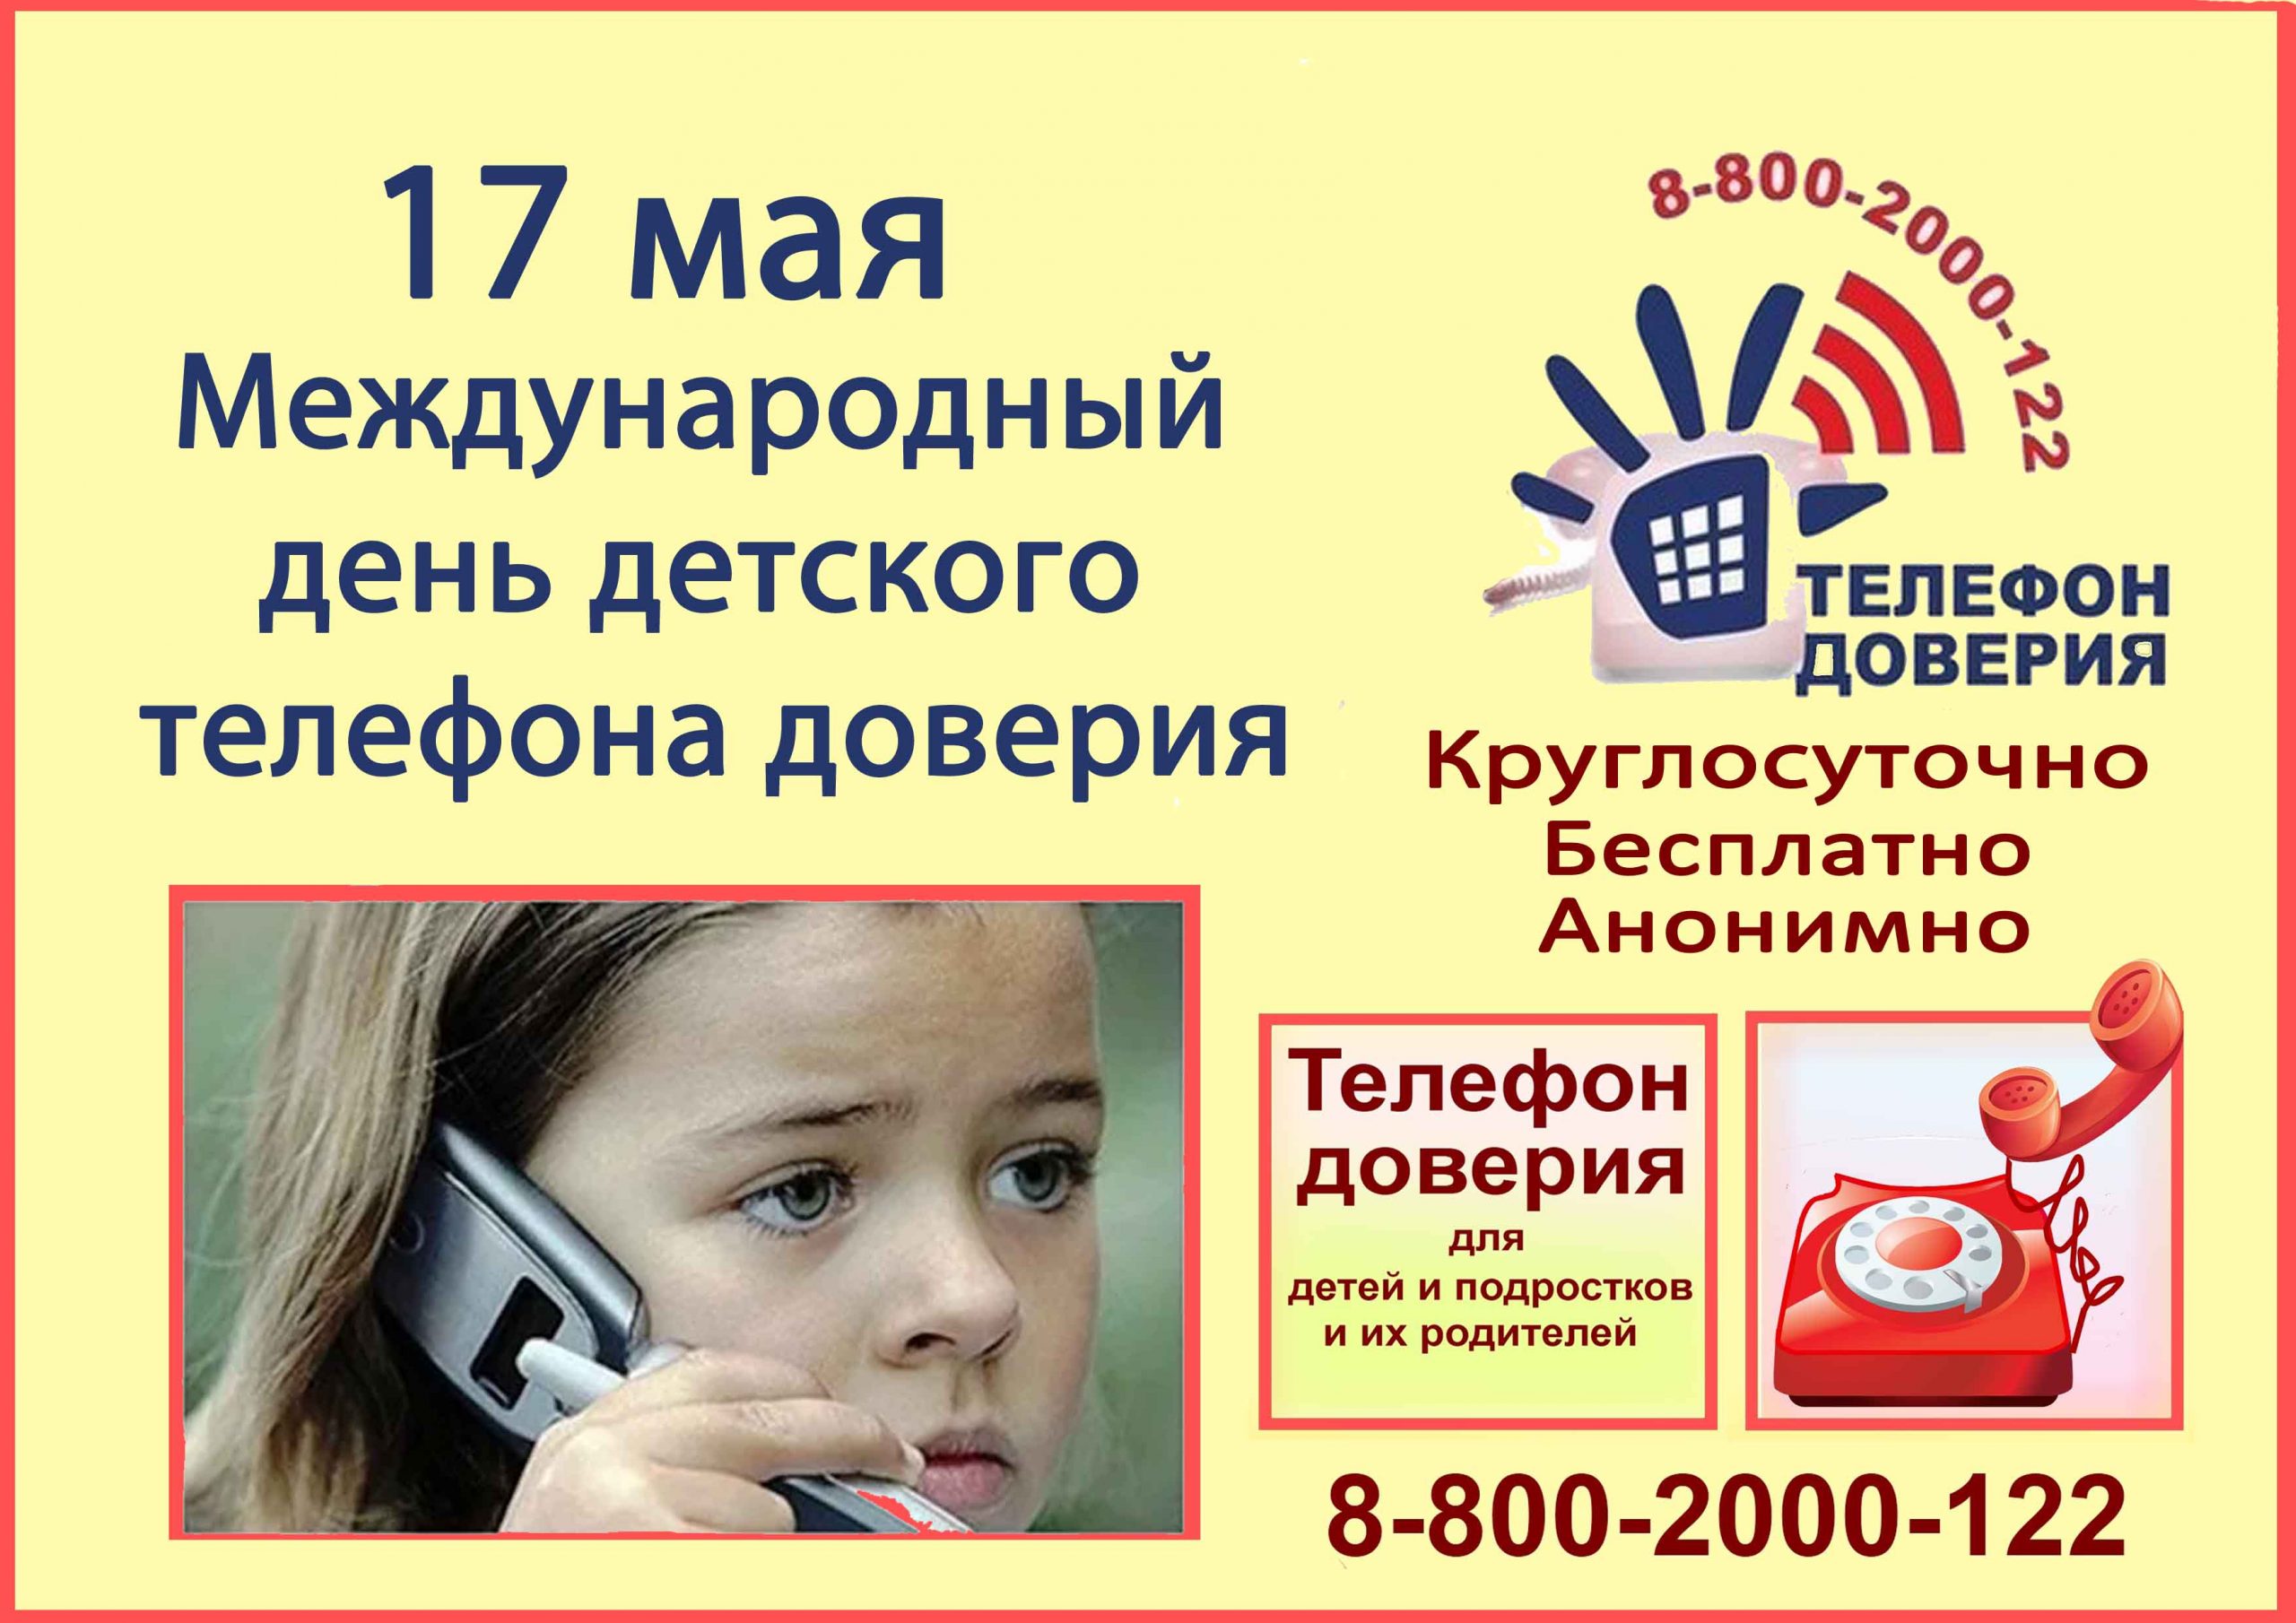 Телефон доверия для детей и подростков: помощь или вред? - дети в безопасности